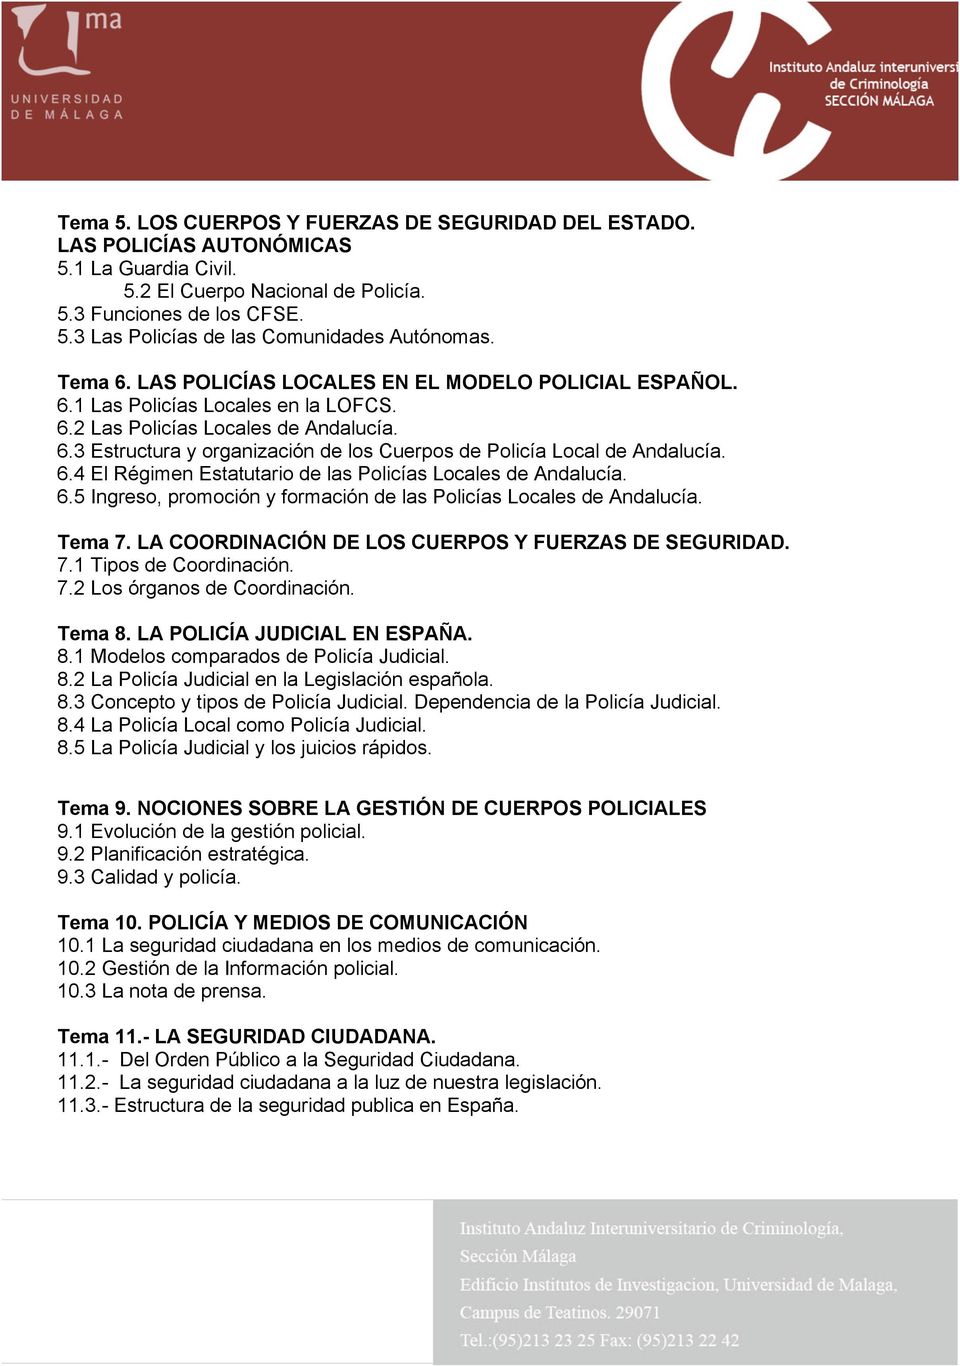 6.4 El Régimen Estatutario de las Policías Locales de Andalucía. 6.5 Ingreso, promoción y formación de las Policías Locales de Andalucía. Tema 7. LA COORDINACIÓN DE LOS CUERPOS Y FUERZAS DE SEGURIDAD.